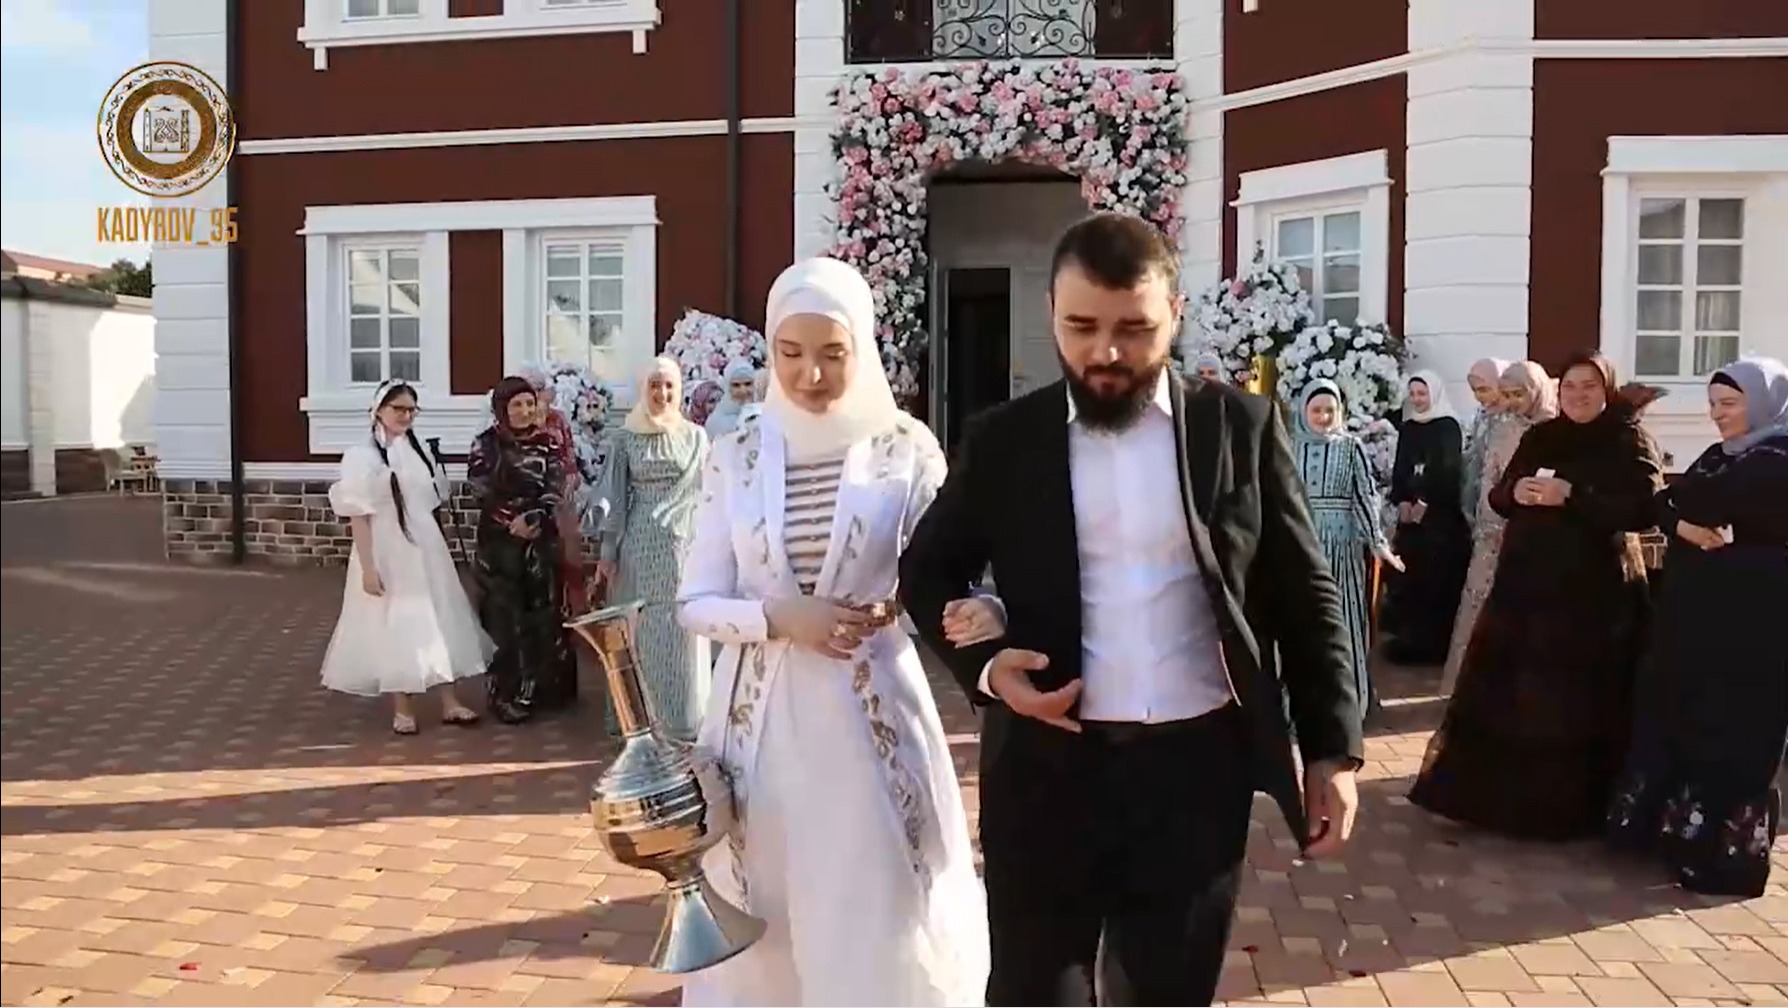 Кадры со свадьбы 17-летнего сына Кадырова опубликовал в сети Тимати